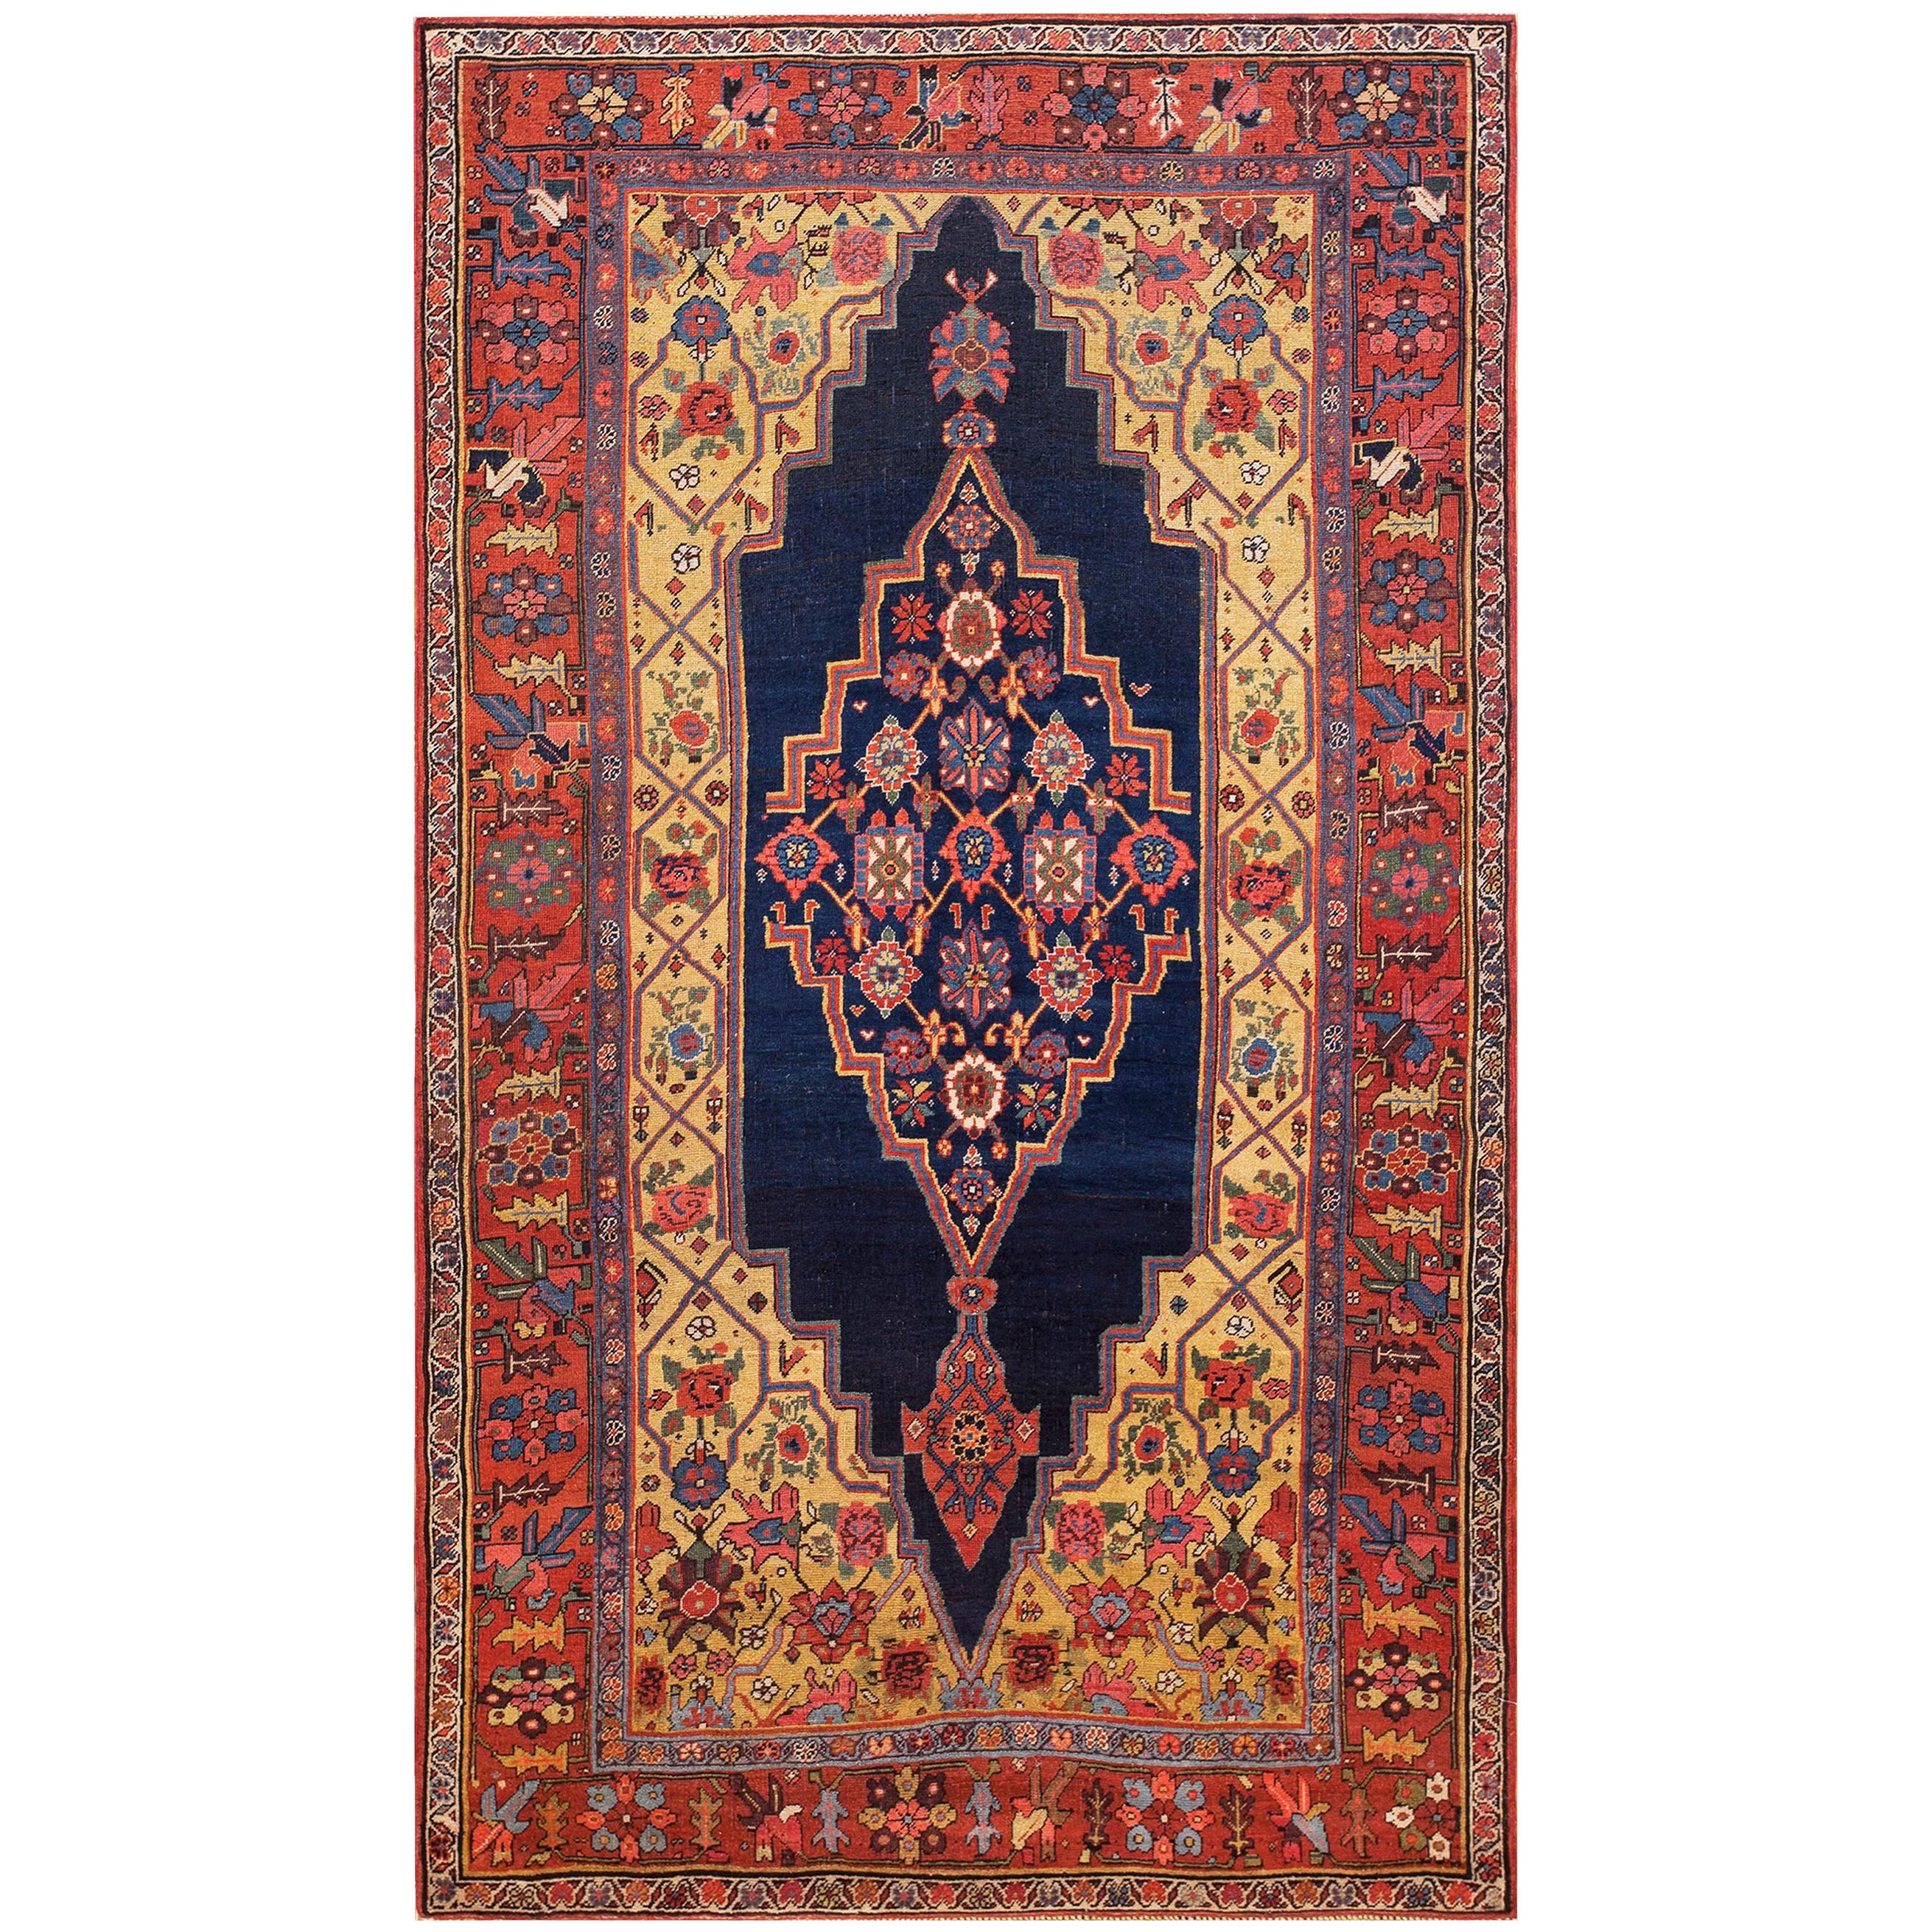 Antique Persian Bijar Rug 4' 9" x 8' 2" 